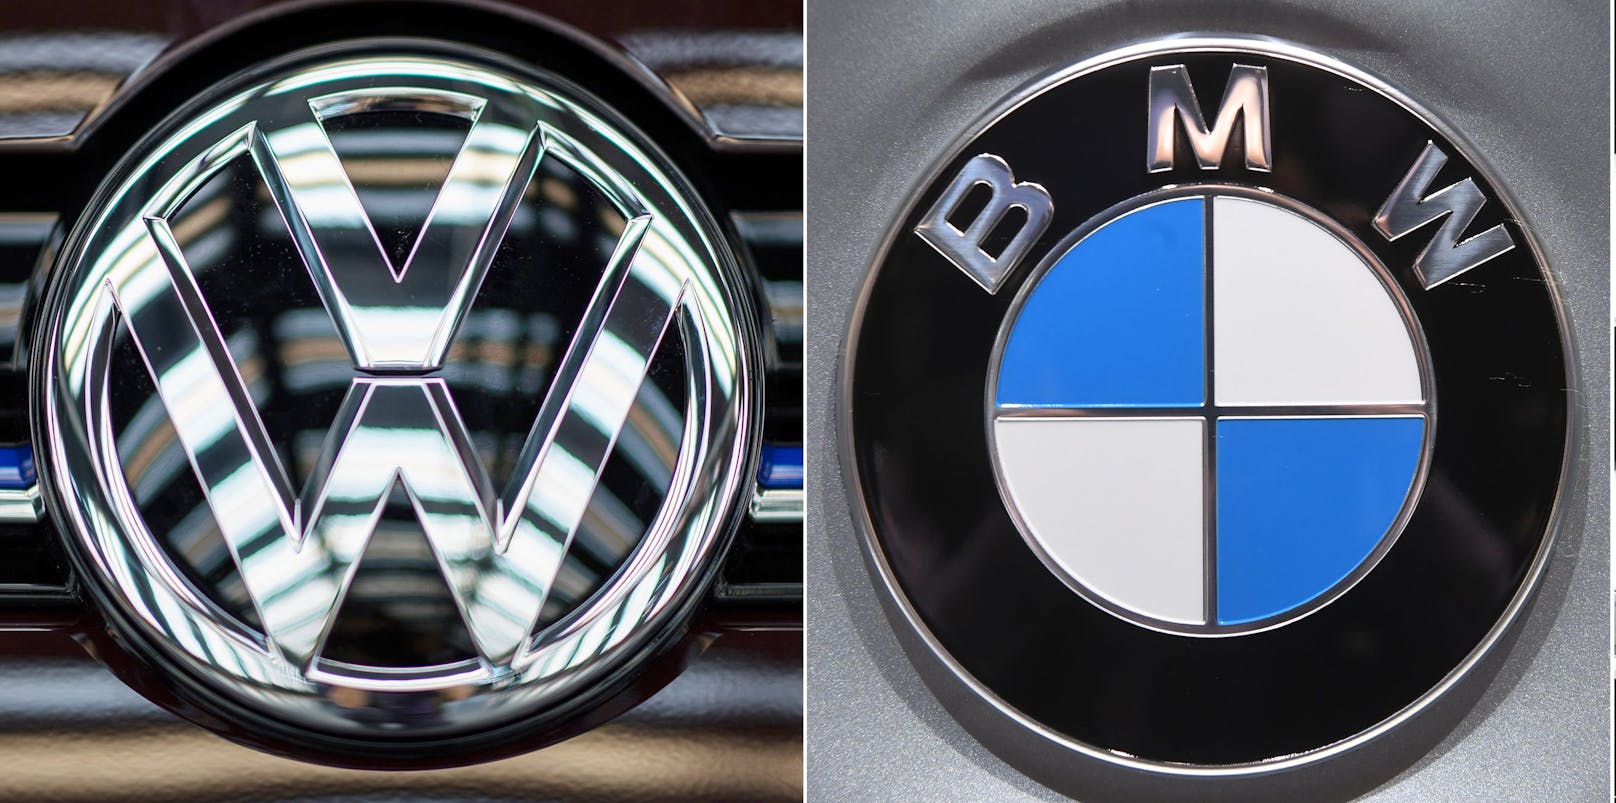 Wegen Verstößen gegen das Kartellrecht brummt die EU-Kommission den deutschen Autobauern BMW und VW Strafen in Millionenhöhe auf.